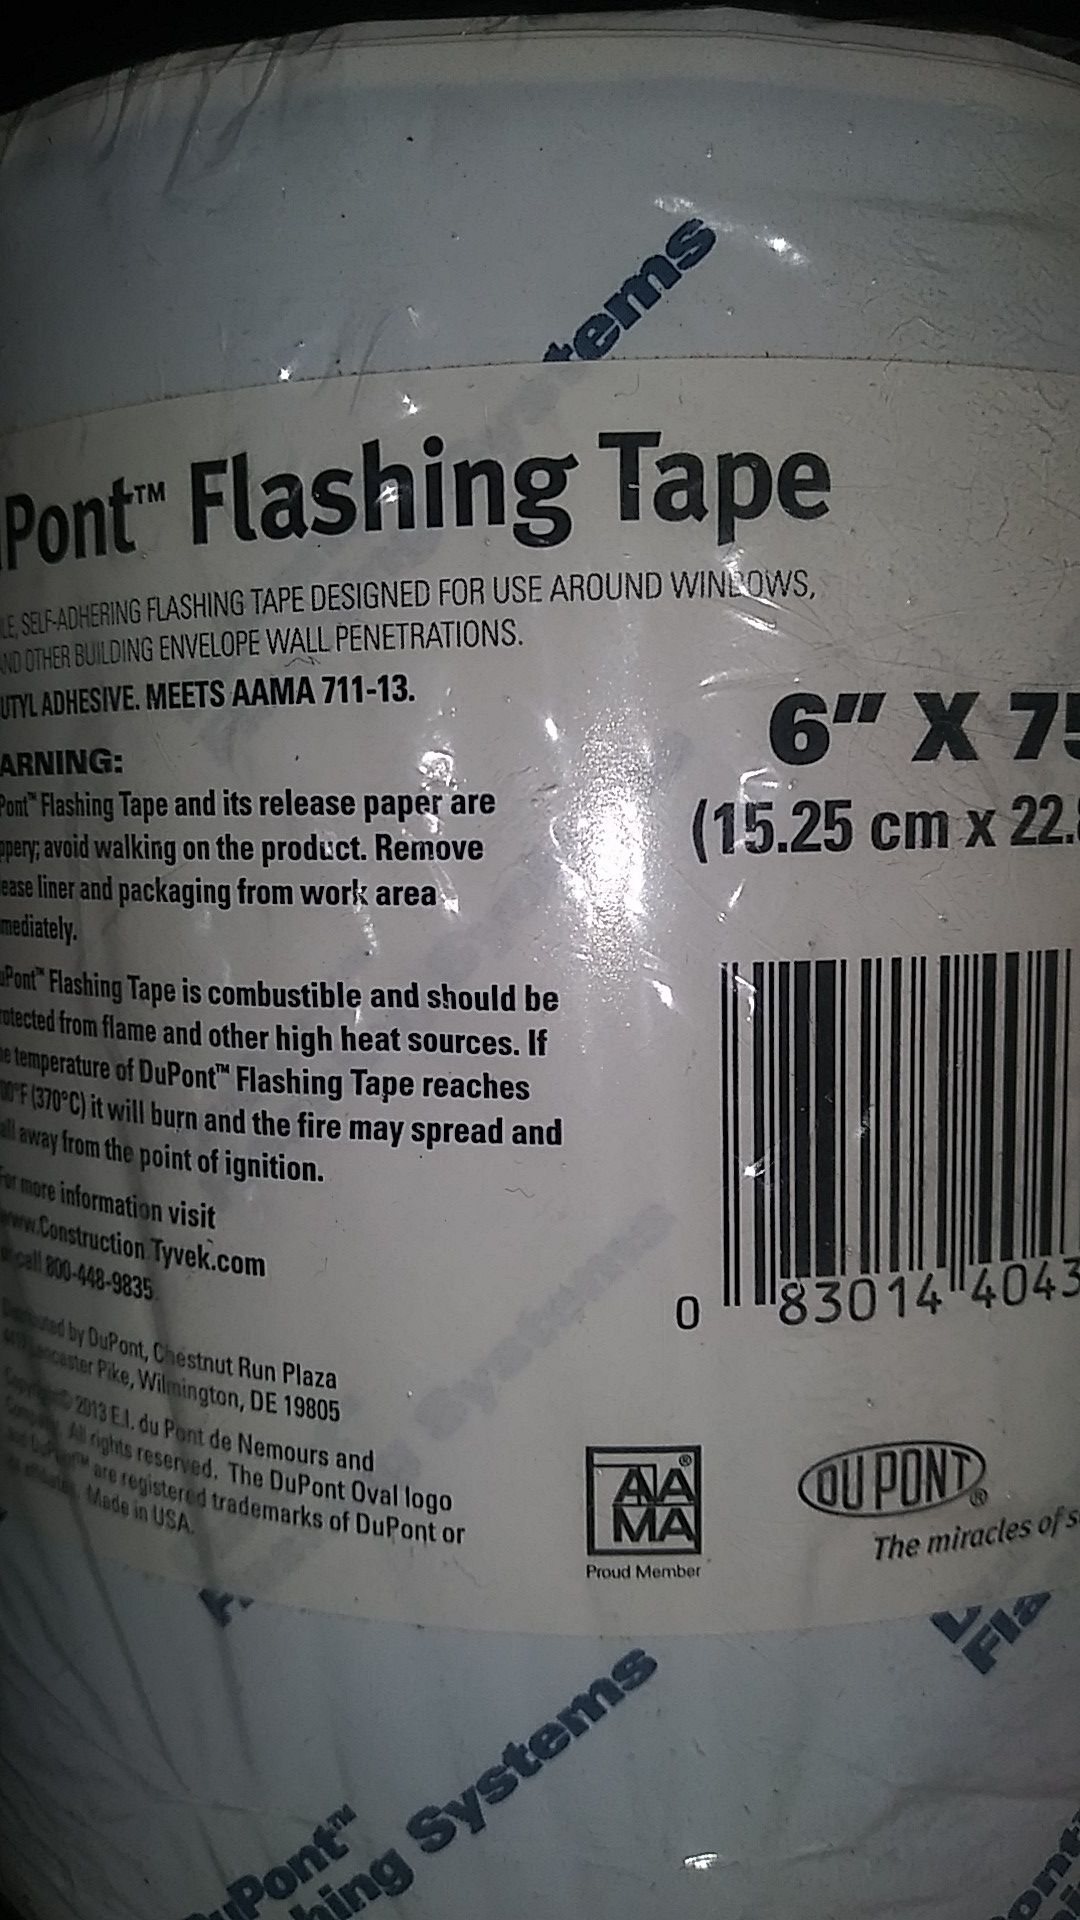 DuPont flashing tape